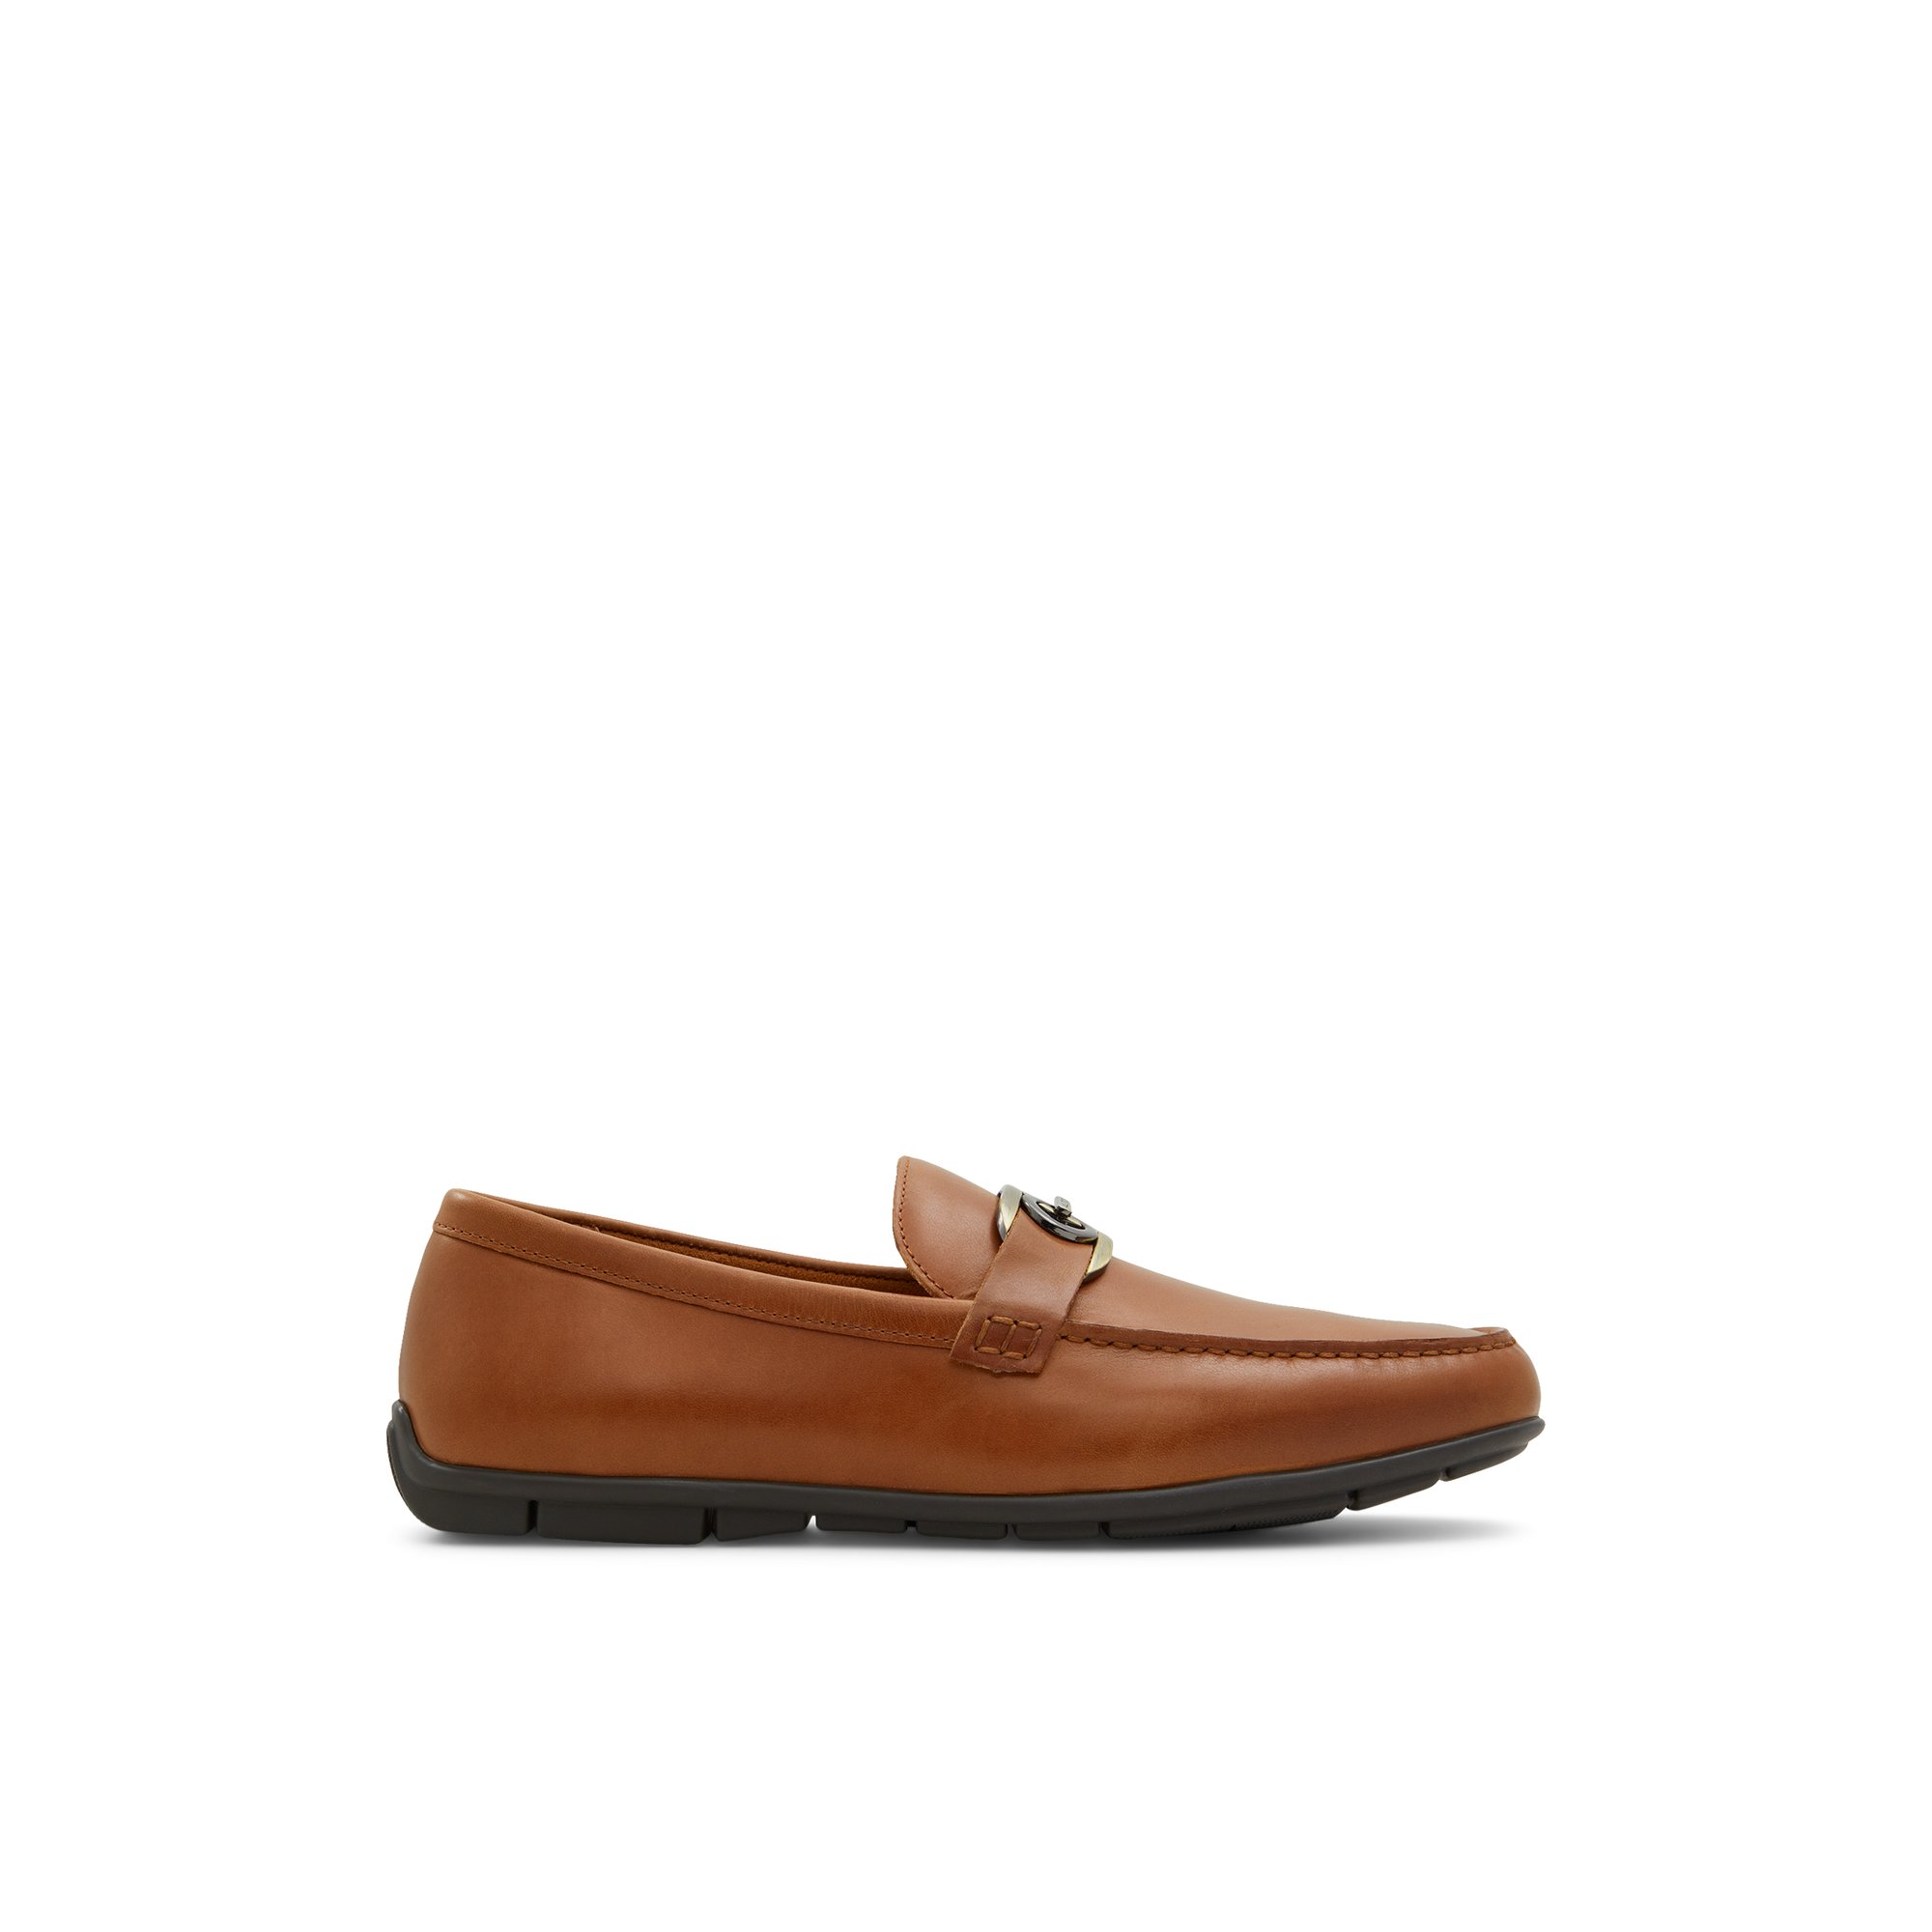 ALDO Haan - Men's Casual Shoe - Brown